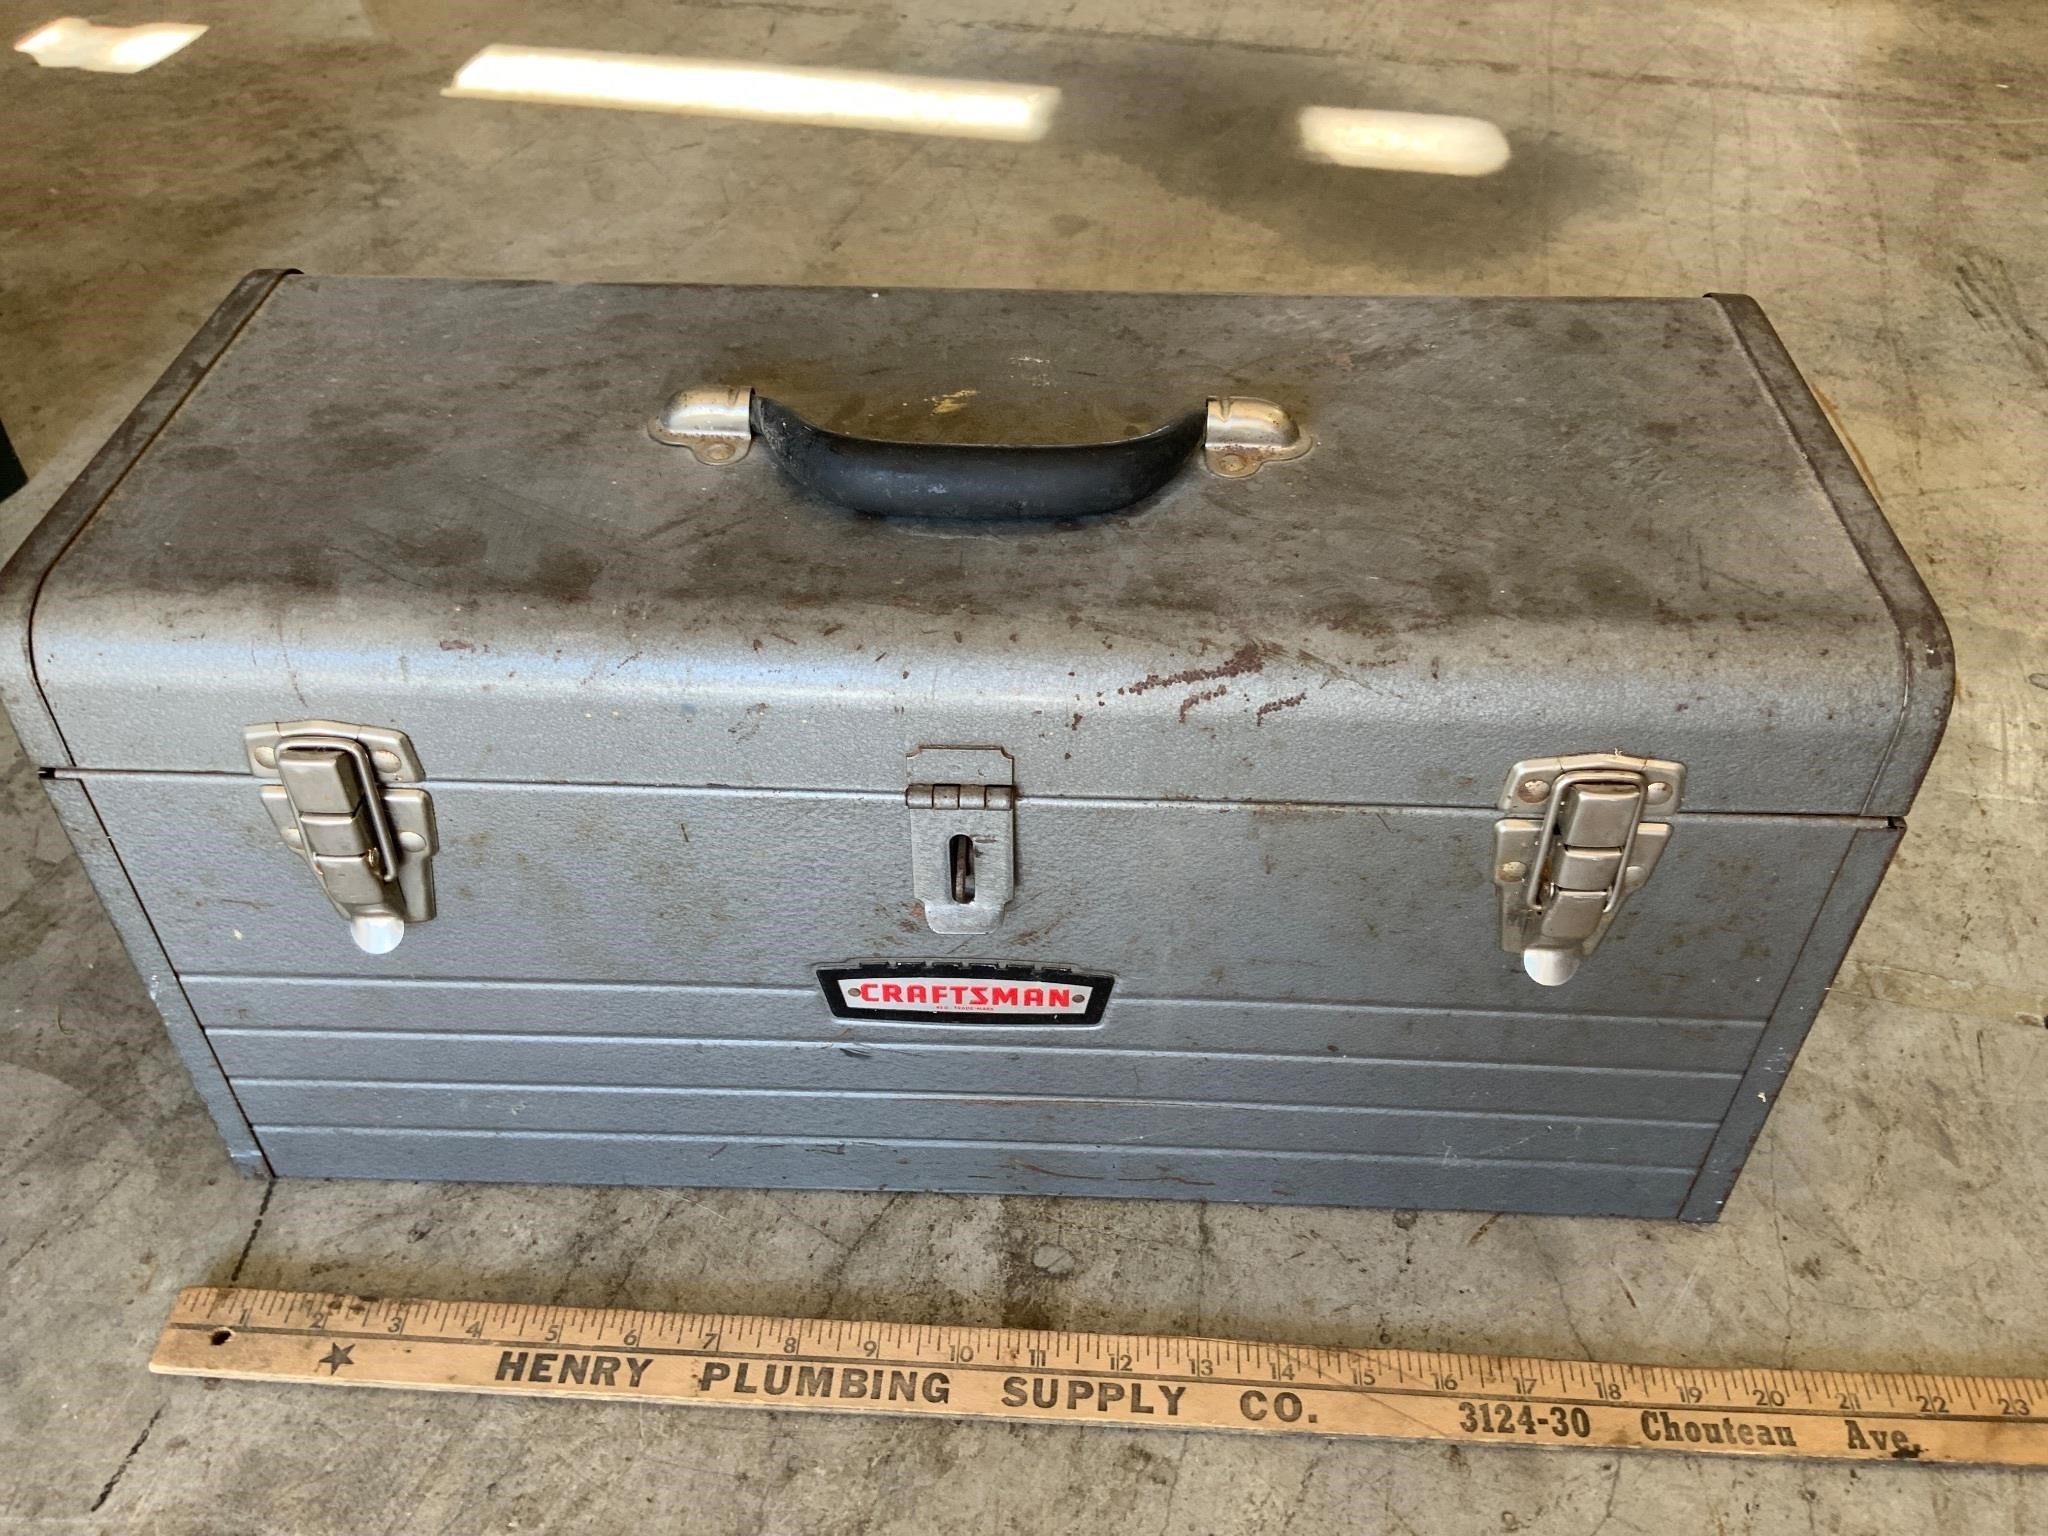 Craftsman metal tool box.